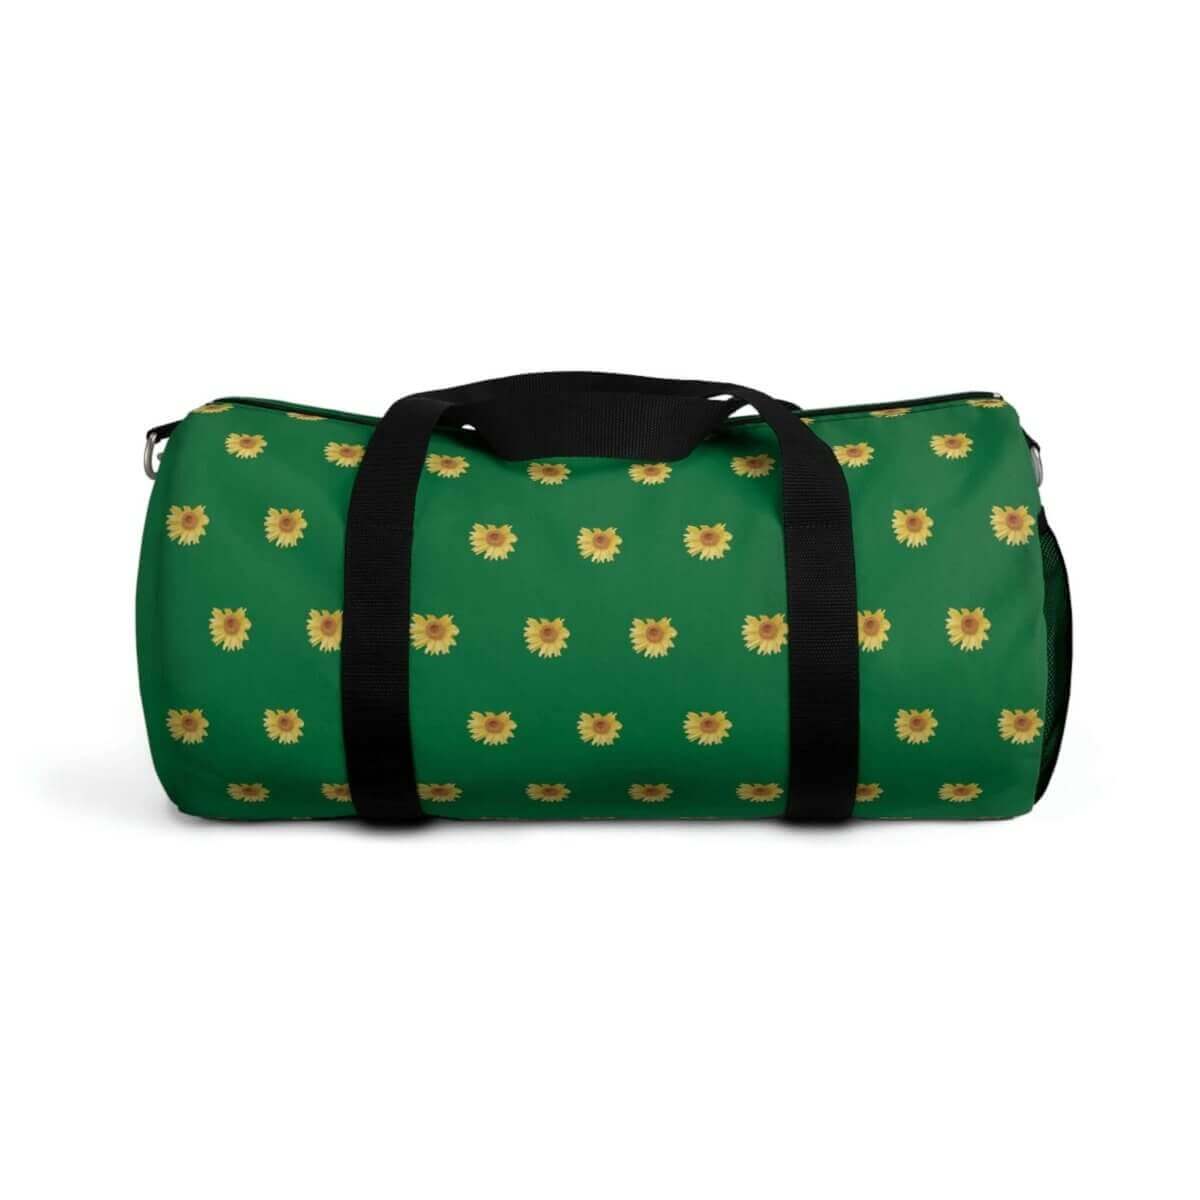 Duffel Bag - Green Sunny Sunflower Design - 1